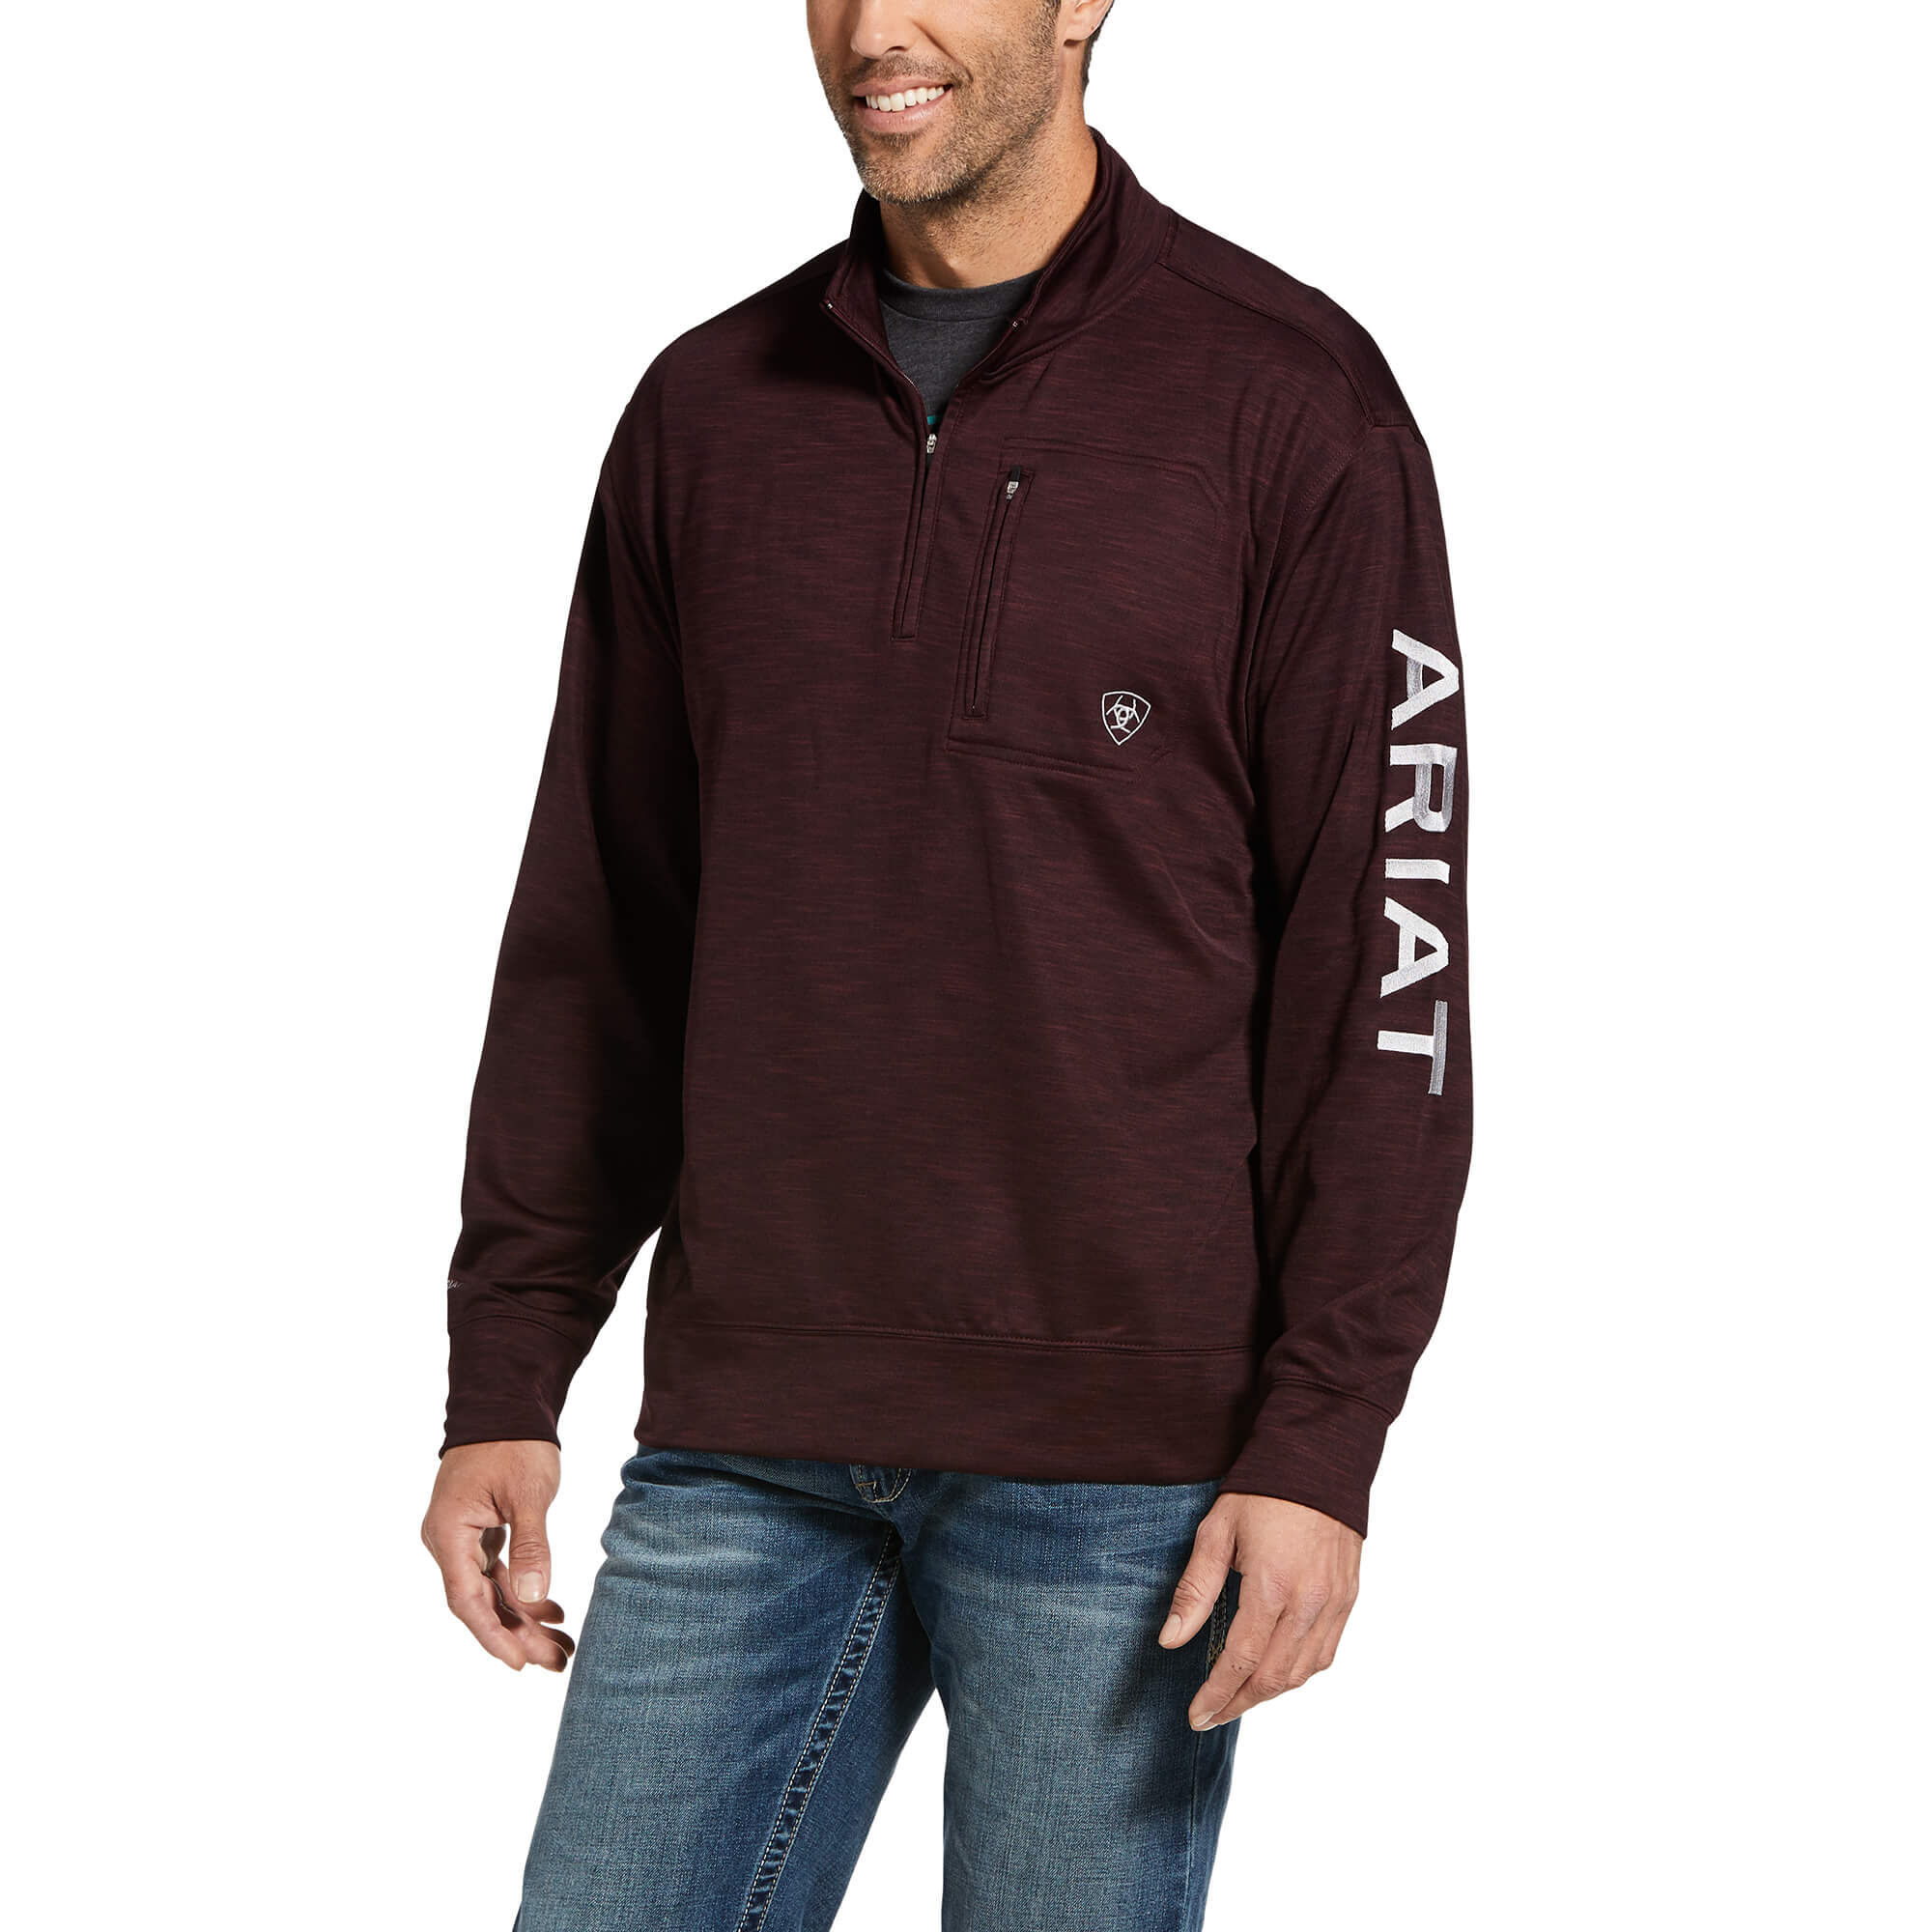 Ariat® Men's Team Logo Black 1/4 Zip Tek Fleece Sweatshirt 10013114